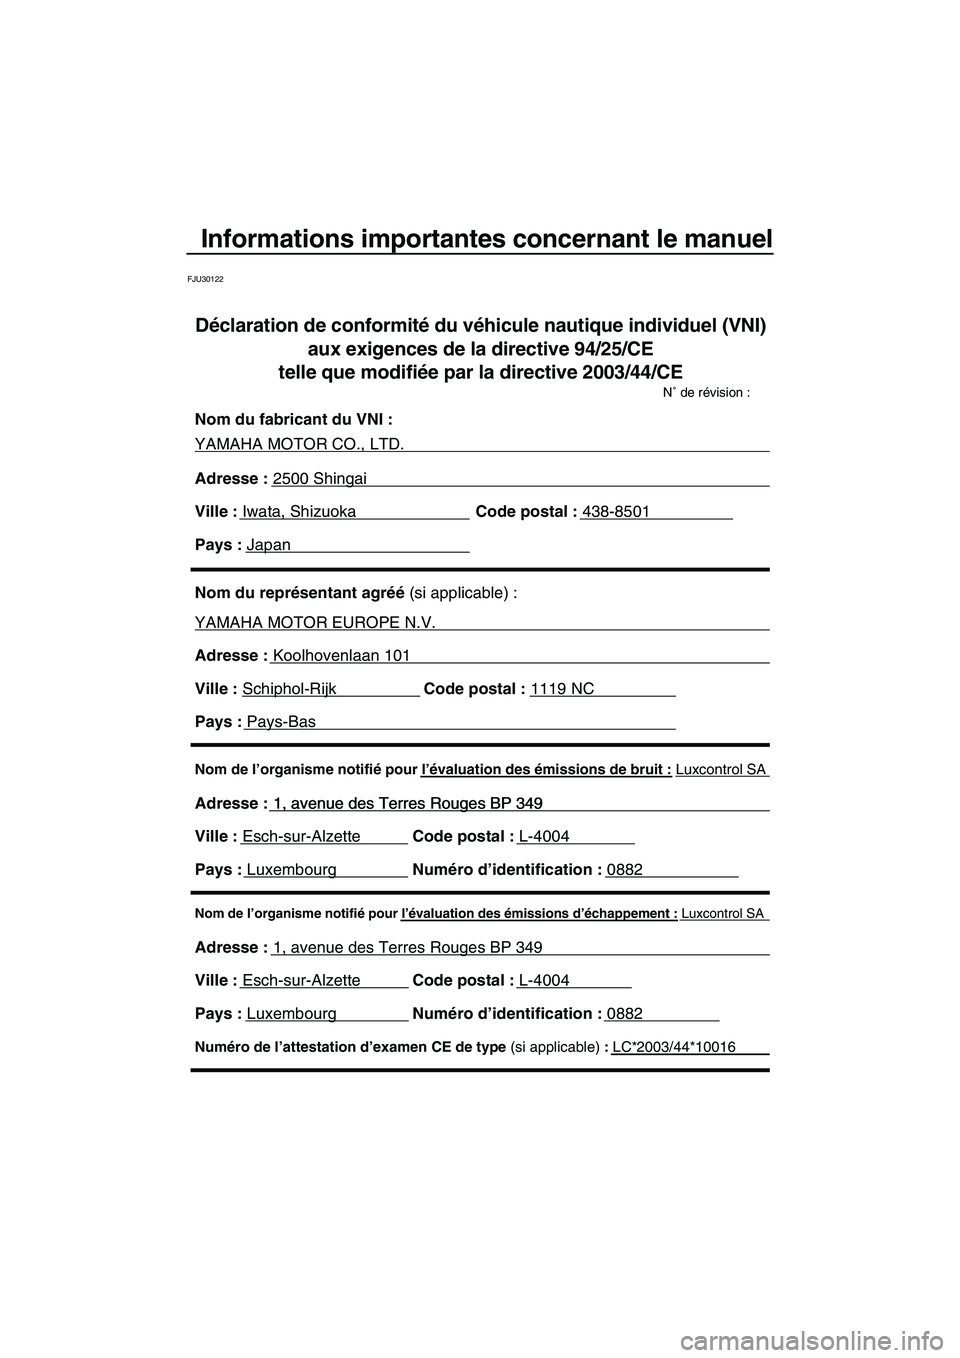 YAMAHA VX SPORT 2008  Notices Demploi (in French) Informations importantes concernant le manuel
FJU30122
Nom de l’organisme notifié pour l’évaluation des émissions d’échappement : Luxcontrol SA
Adresse : 1, avenue des Terres Rouges BP 349 
